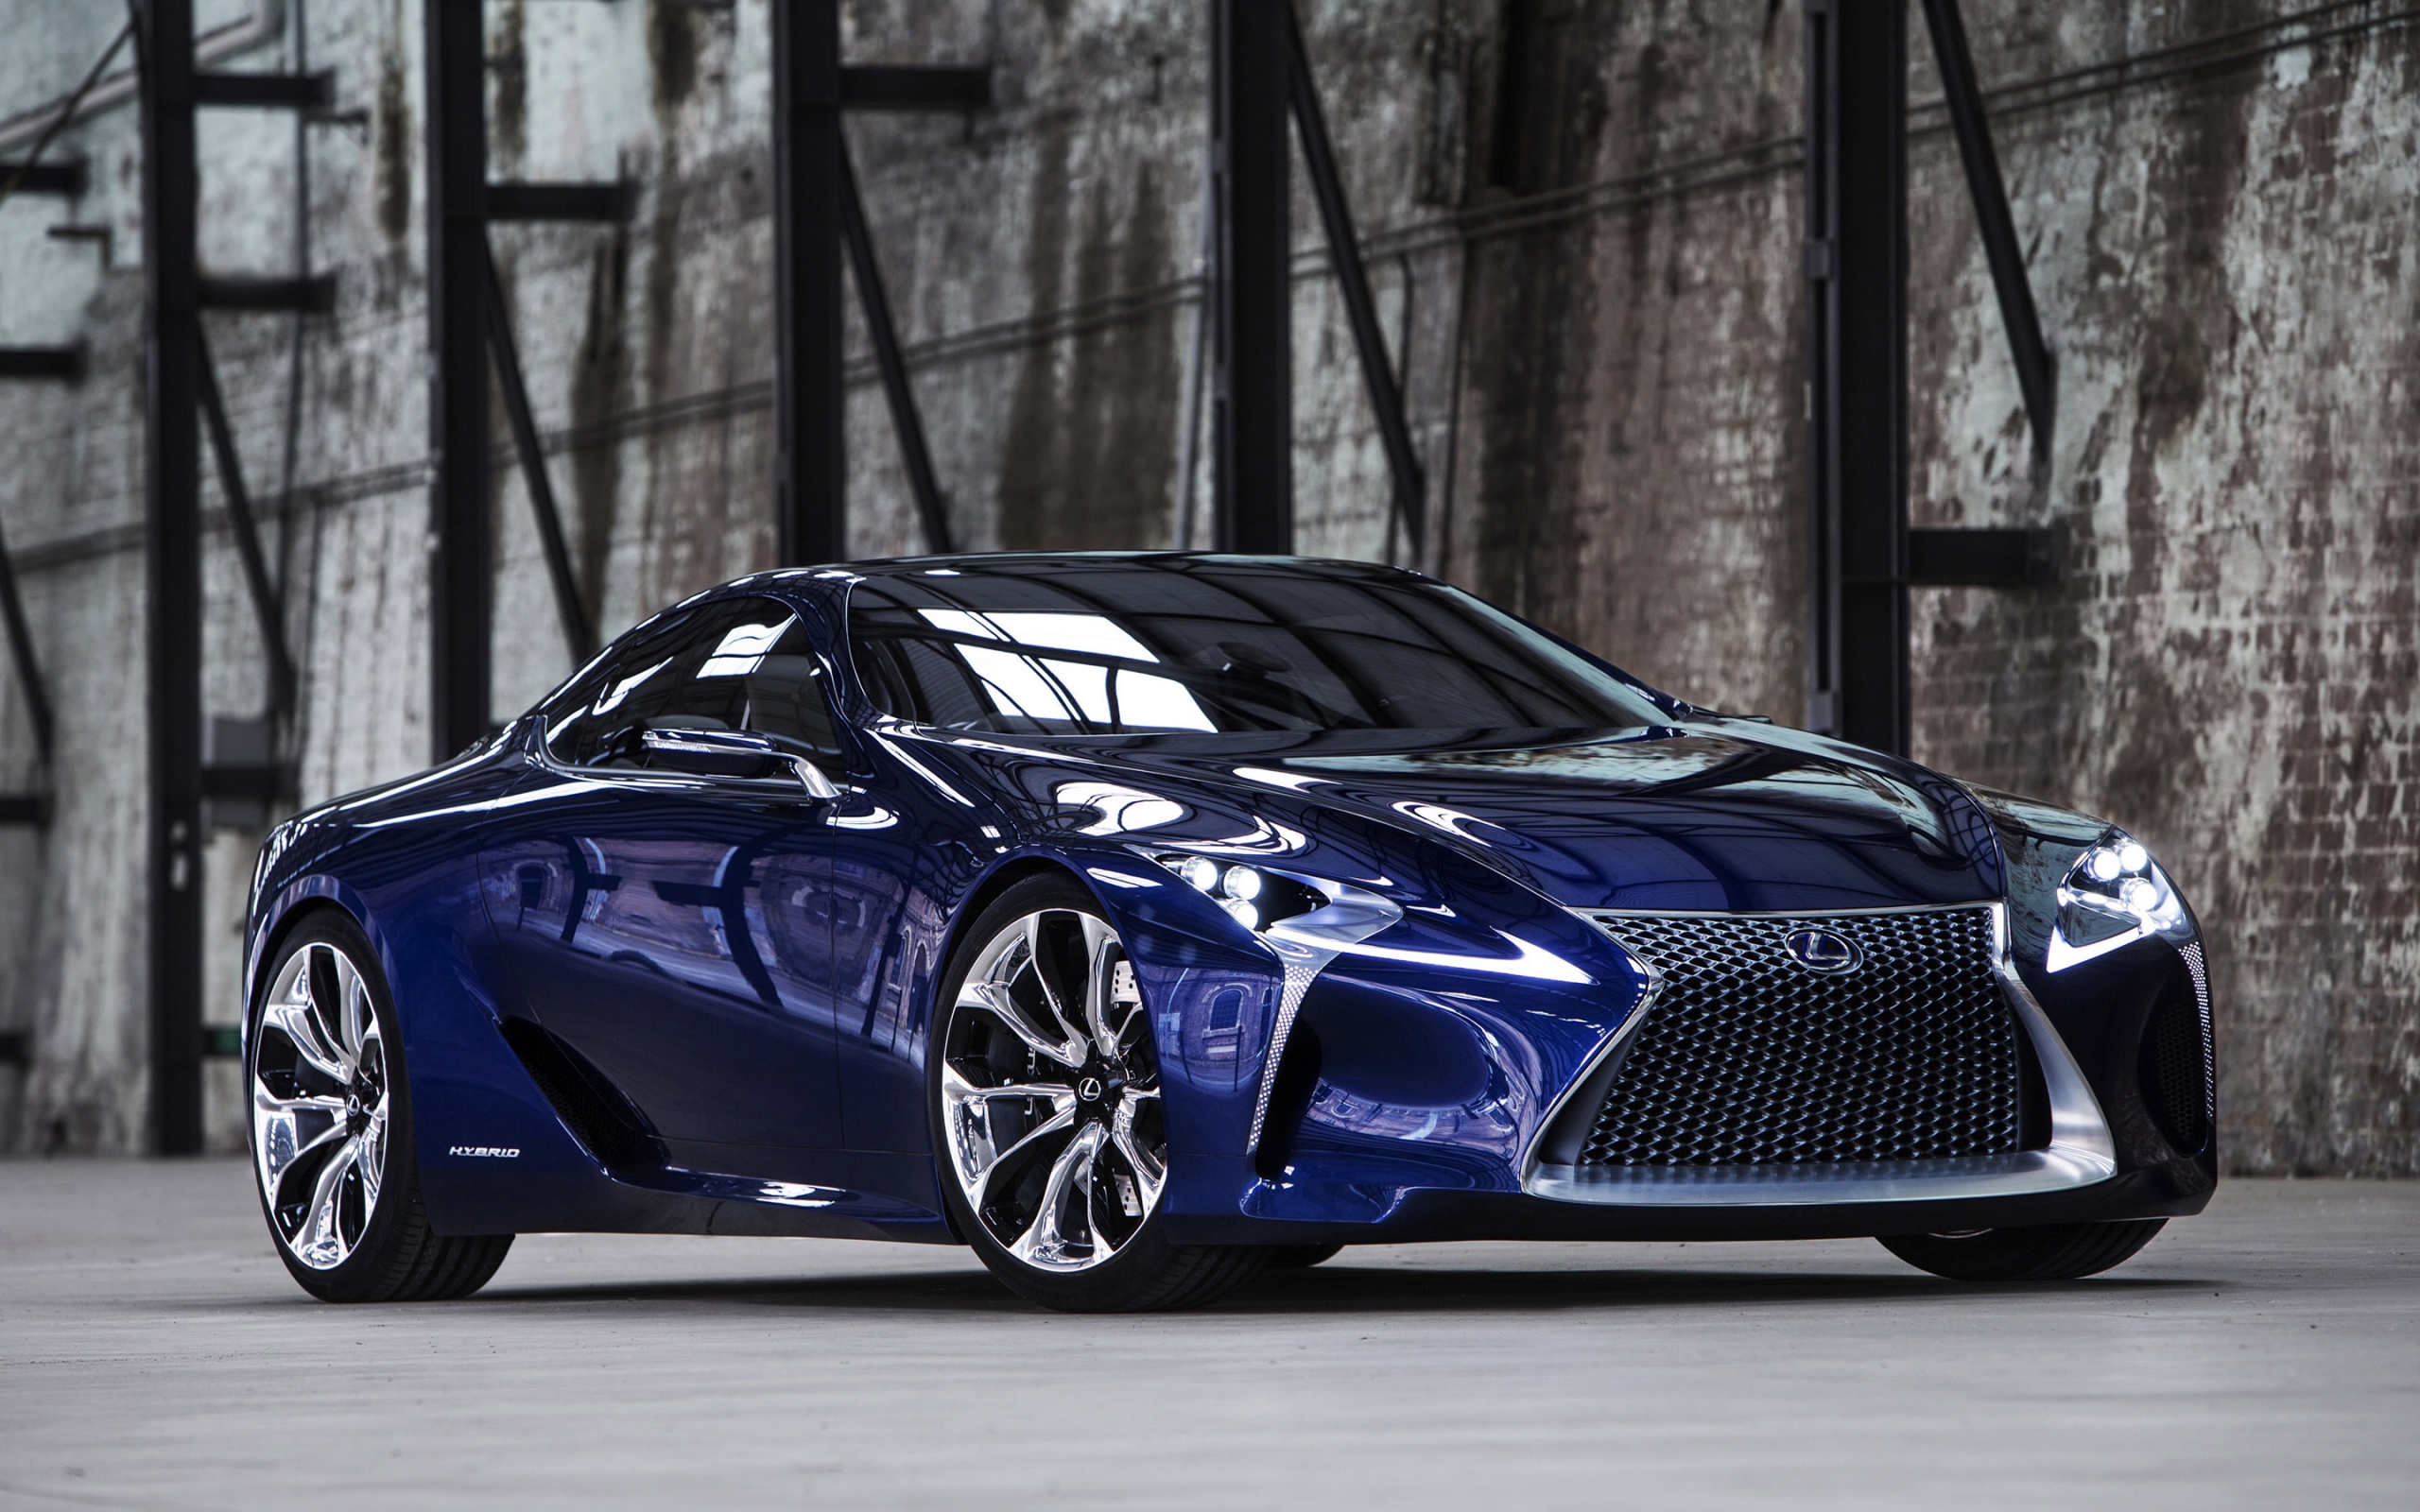 Blue Lexus LF Concept for 2560 x 1600 widescreen resolution